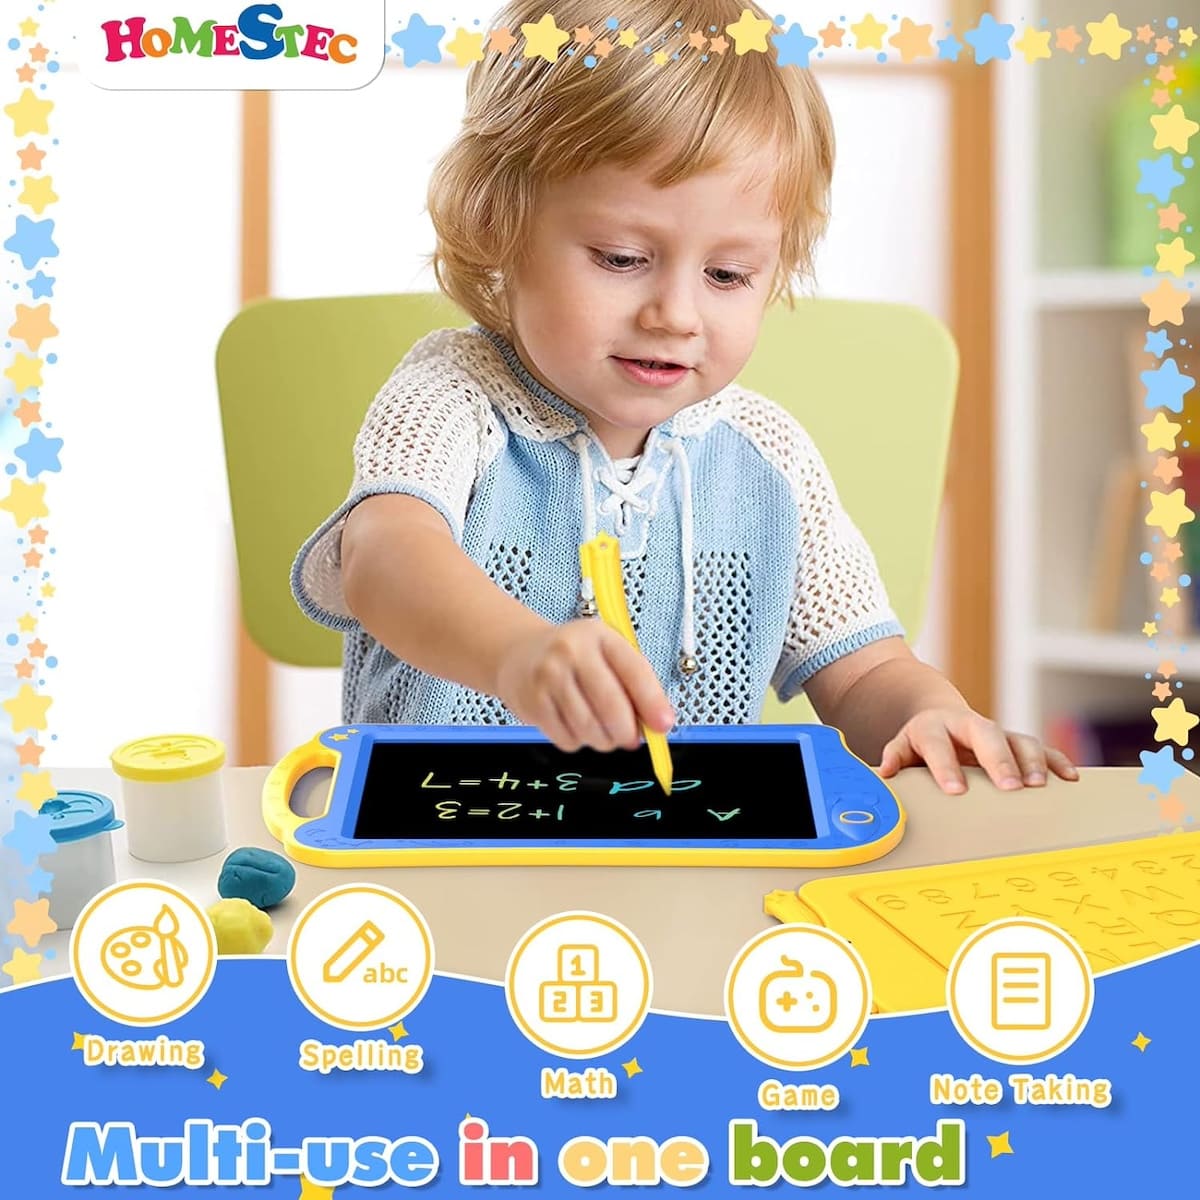 تابلت سحري للرسم مزود بشاشة LCD للأطفال الصغار